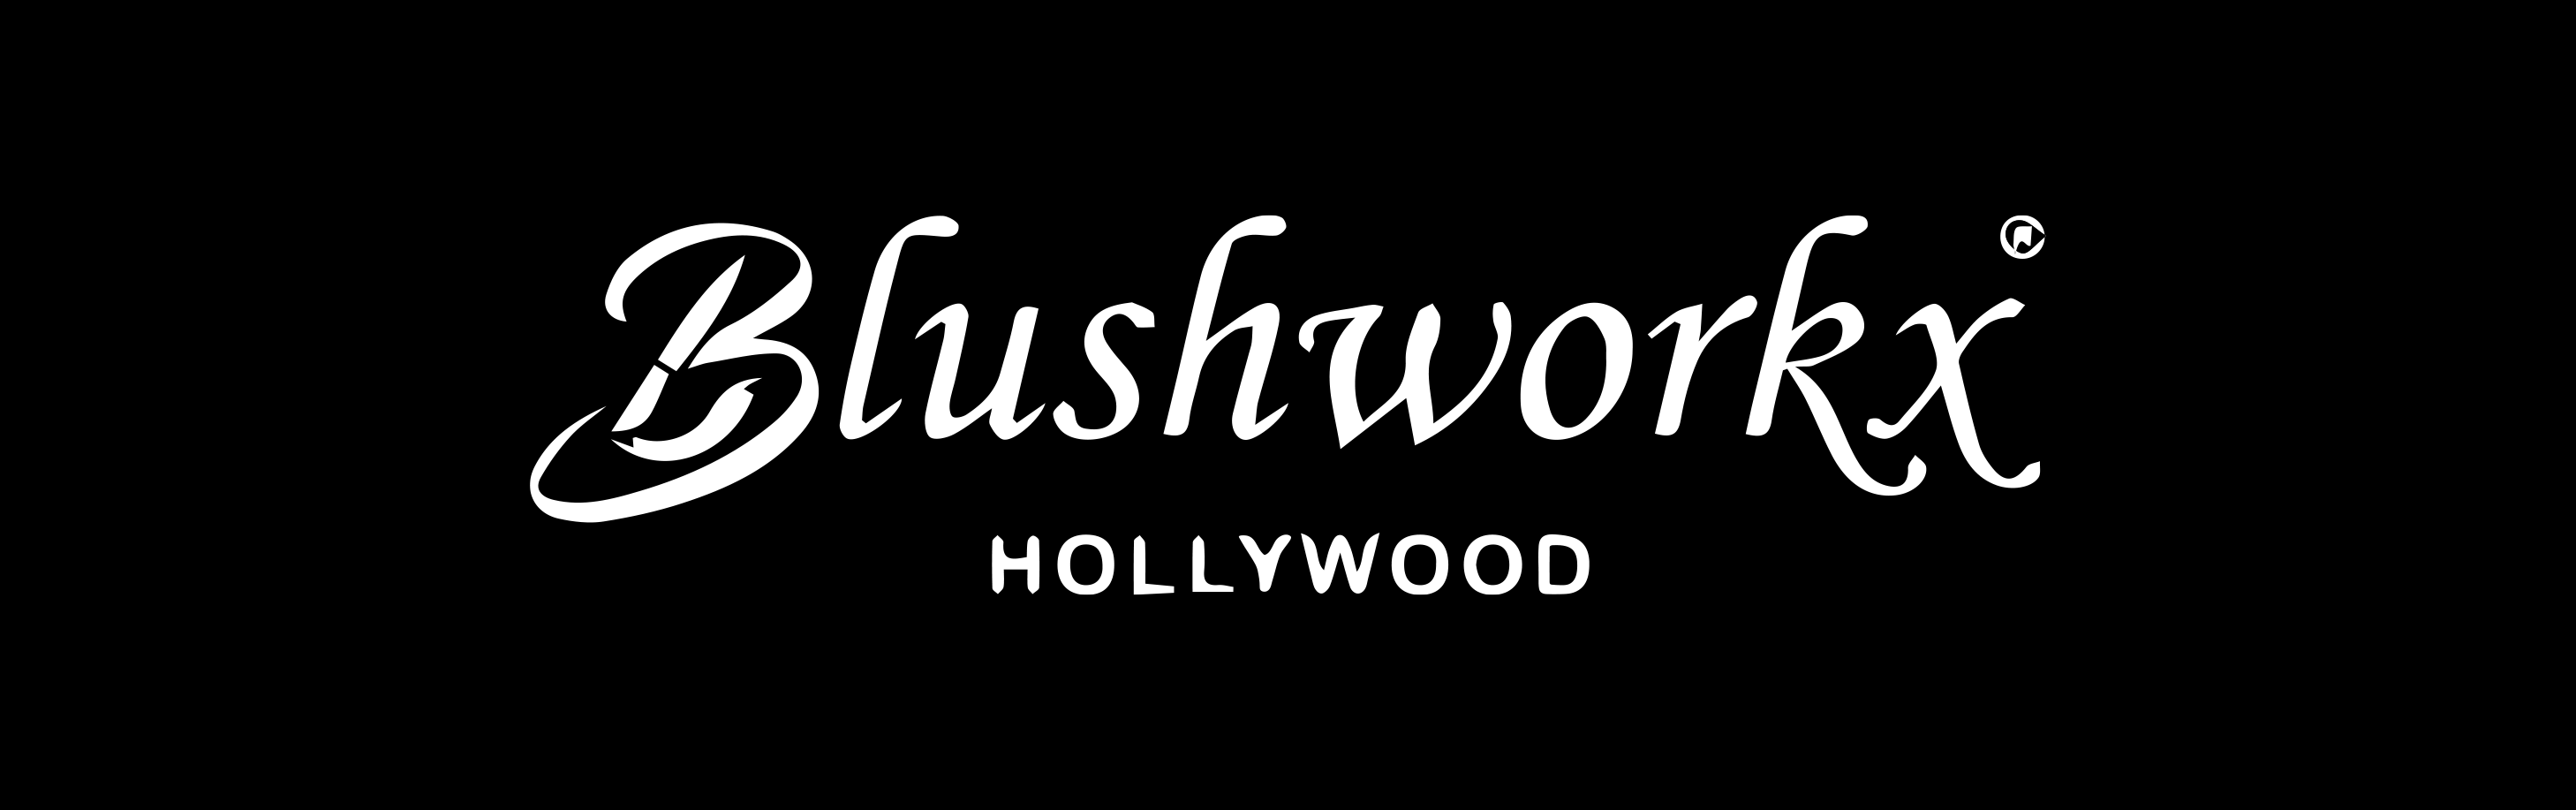 Blushworkx Hollywood